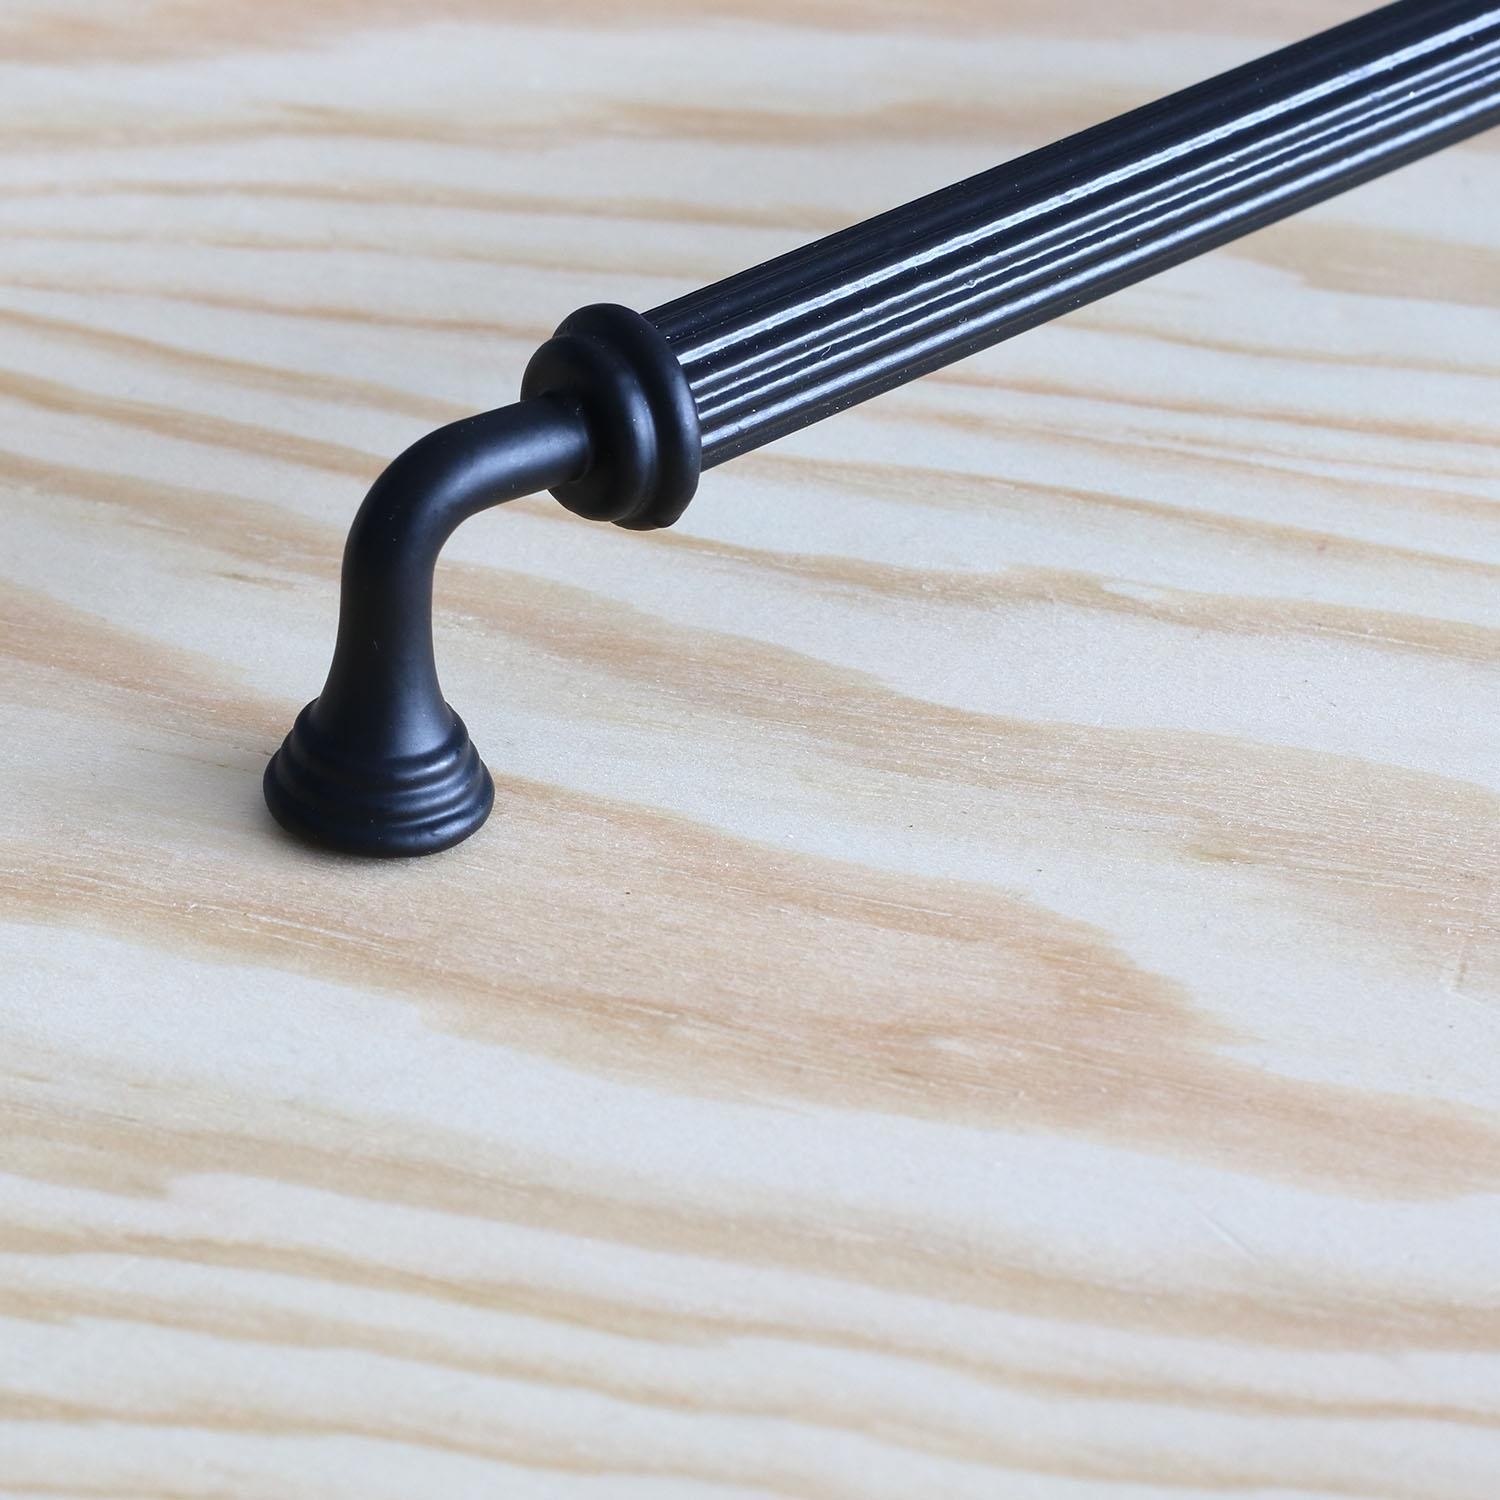 Almira Siyah Metal Kulp 160 mm-16 cm Mobilya Çekmece Mutfak Dolabı Dolap Kapak Kulpları Kulbu Kulpu